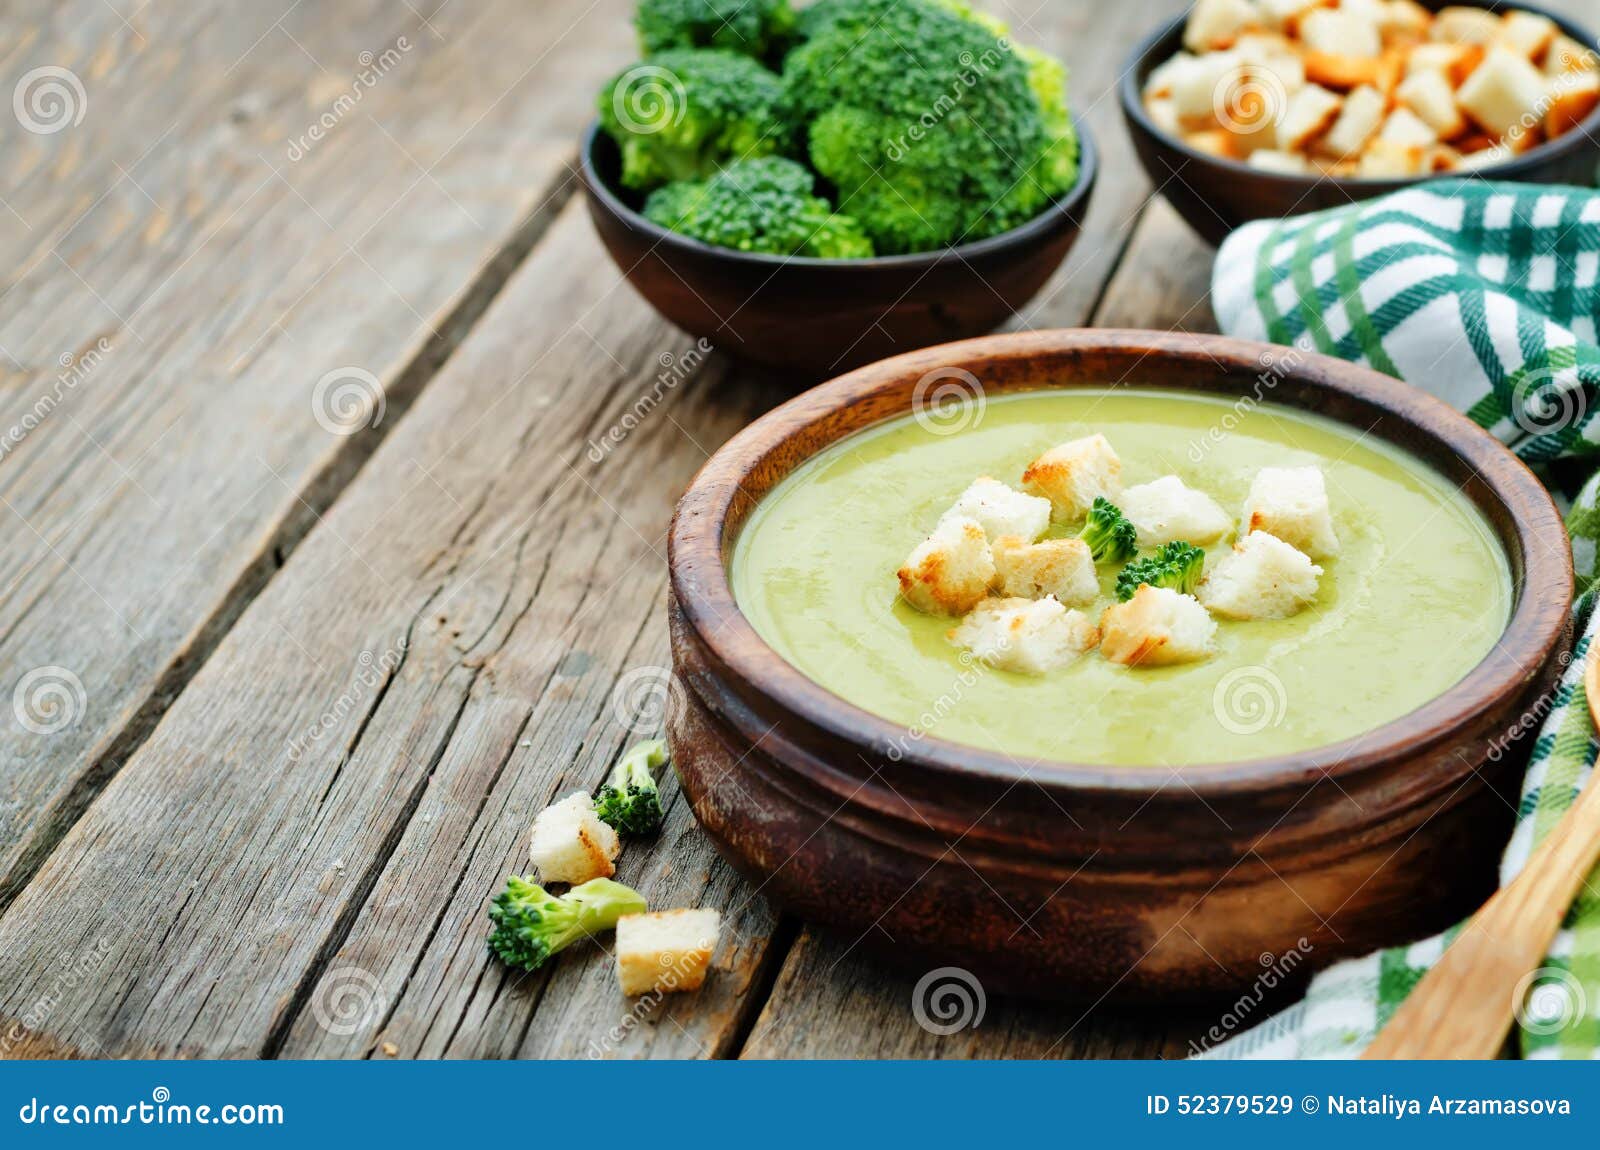 Broccoli soup puree stock image. Image of bowl, light - 52379529